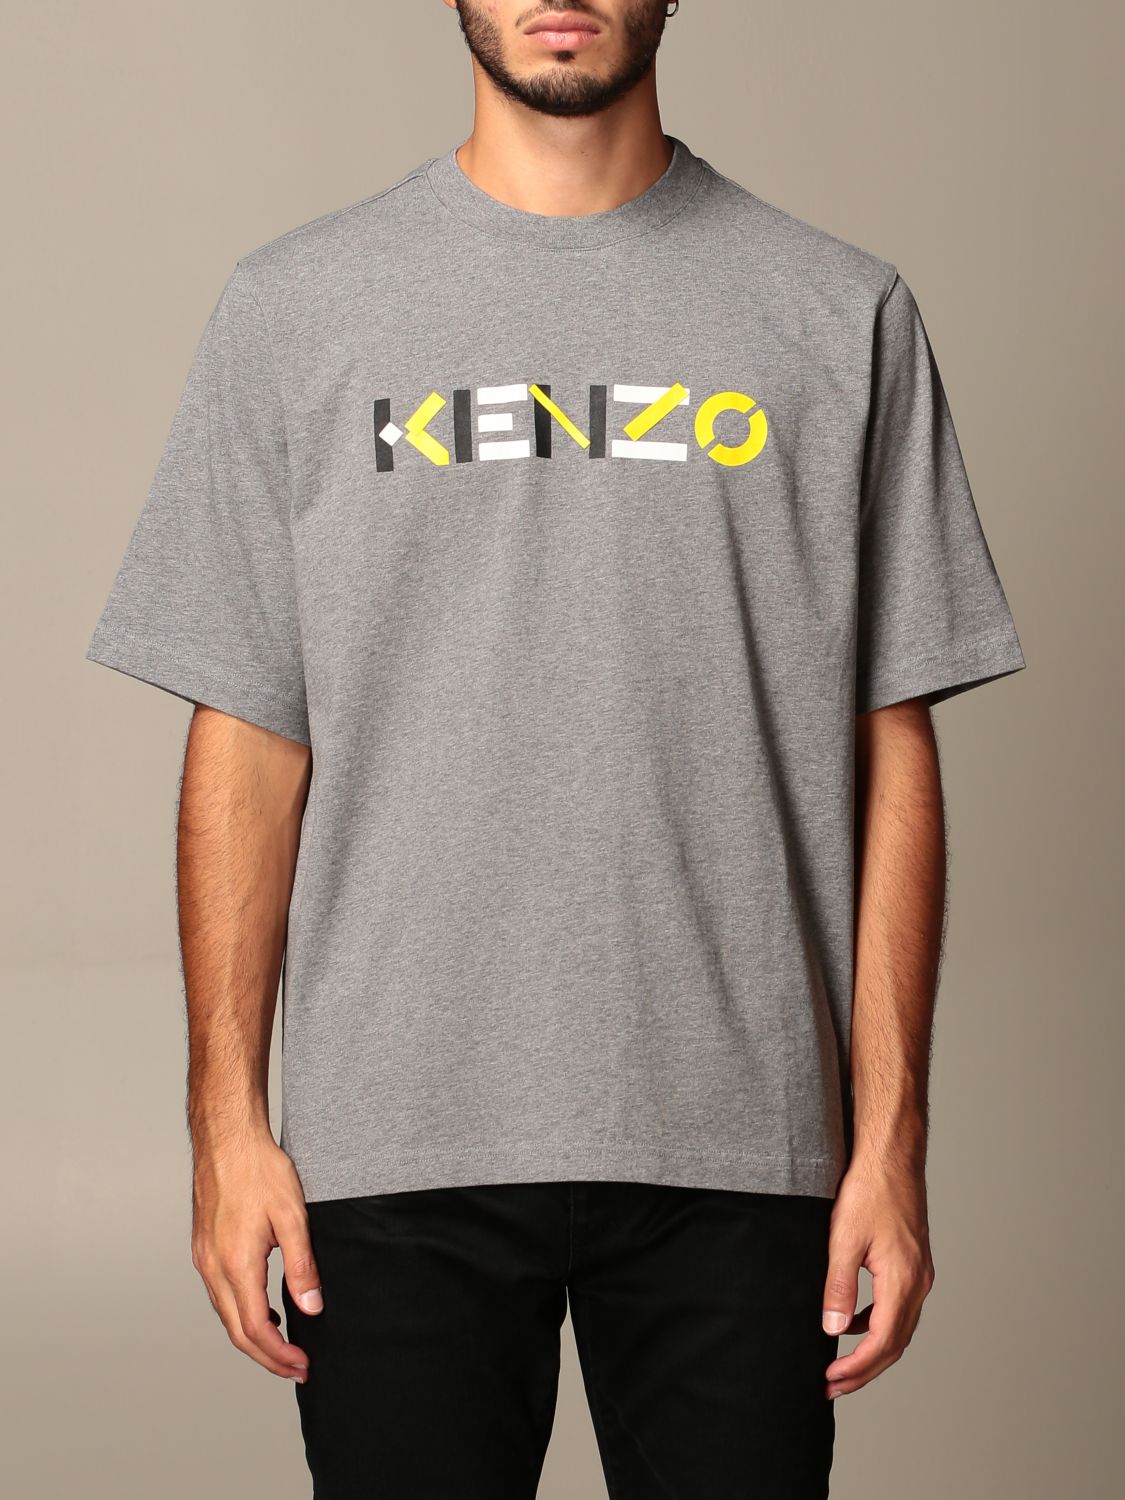 kenzo gray t shirt